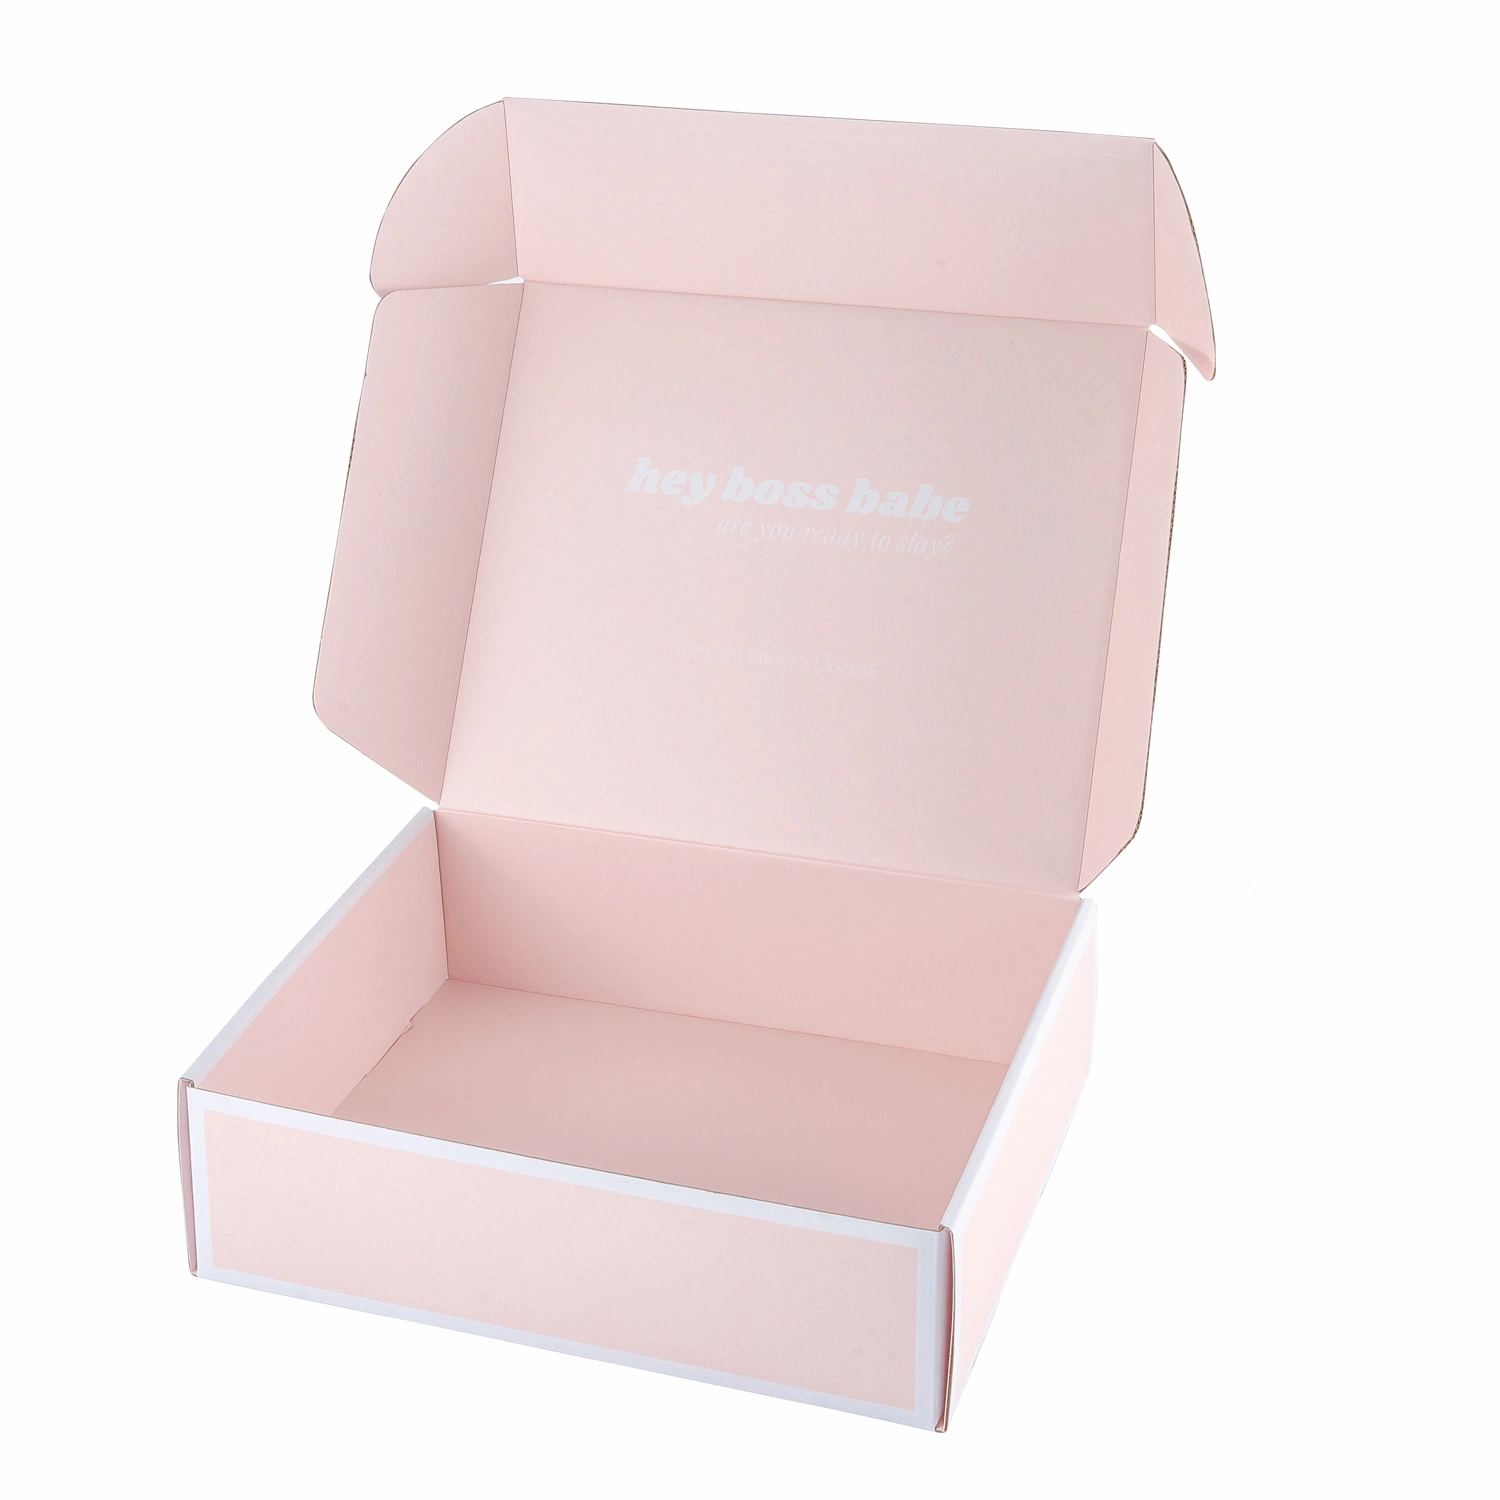 Las cajas de reciclaje de Cajas de rosas Mailer cajas de cartón corrugado de cartón de embalaje de ropa interior de las cajas